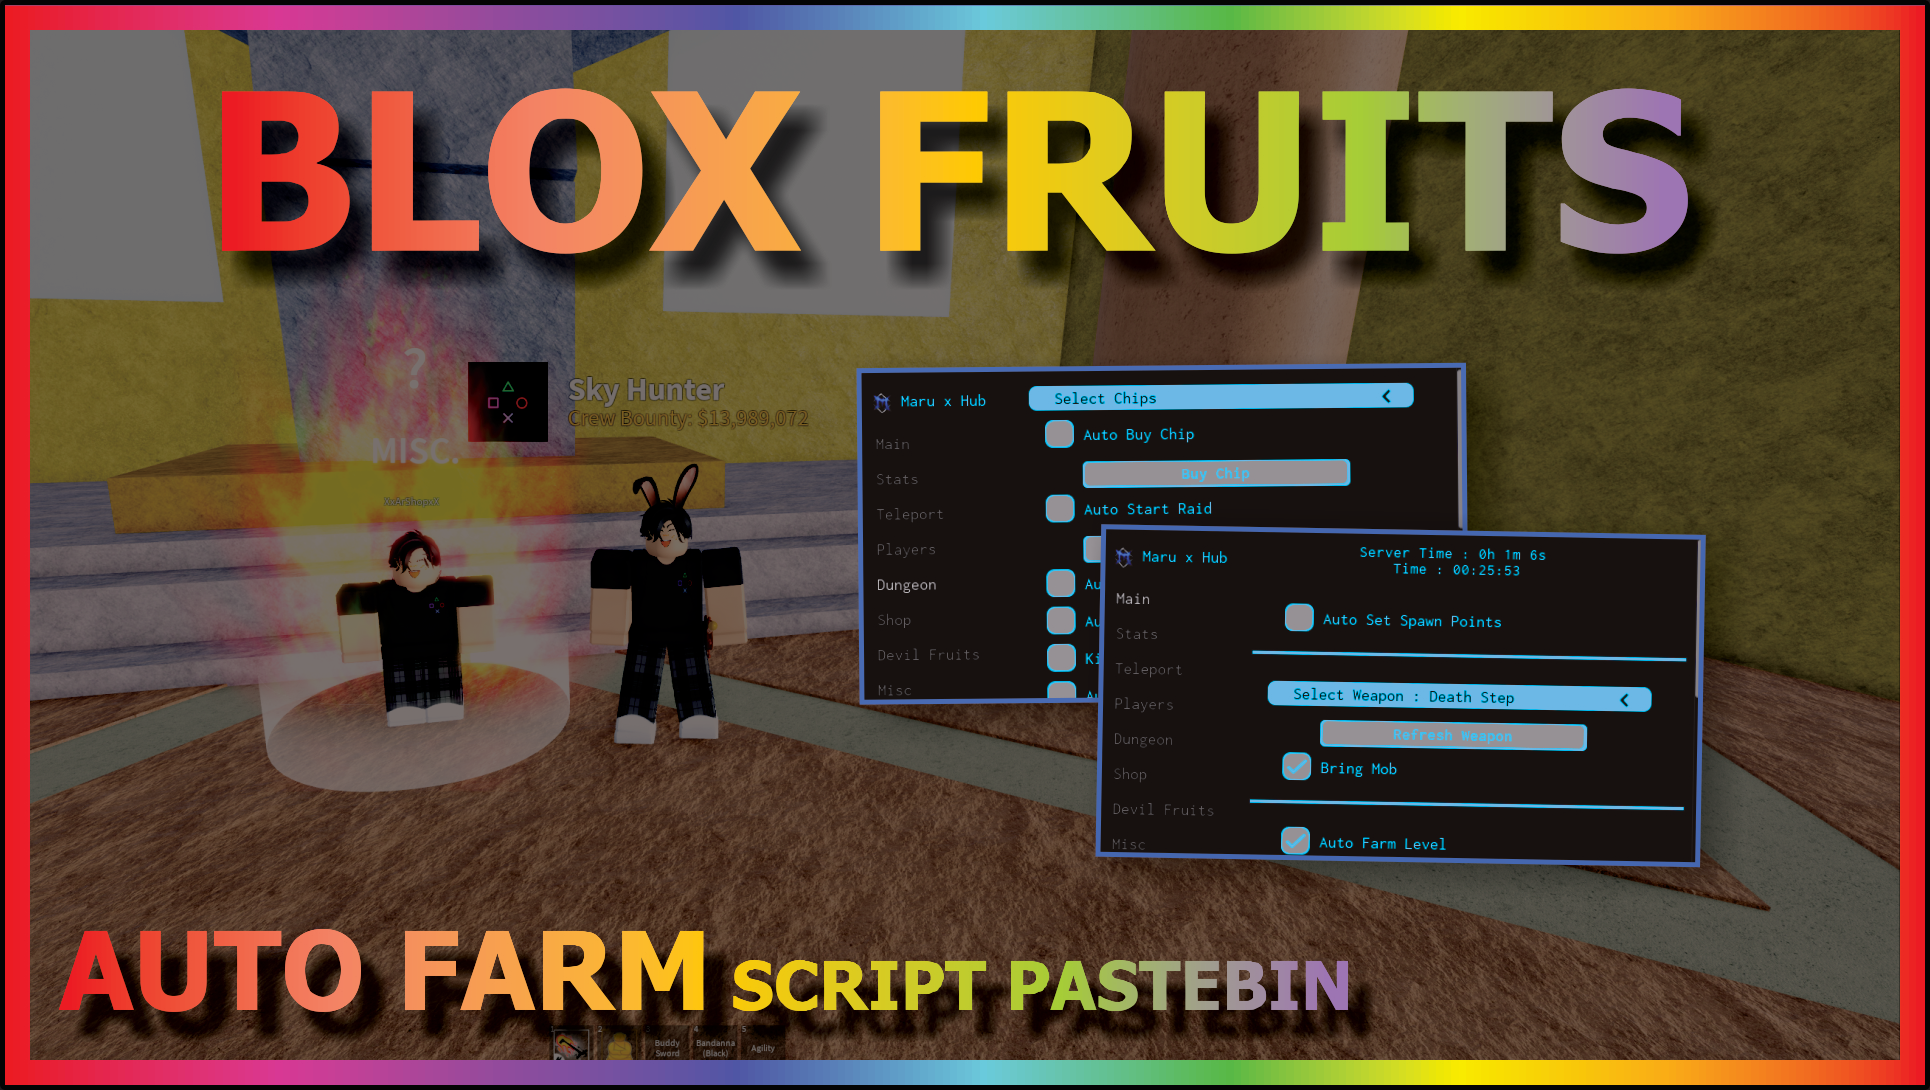 Script blox fruits Maru X hub (sem key)